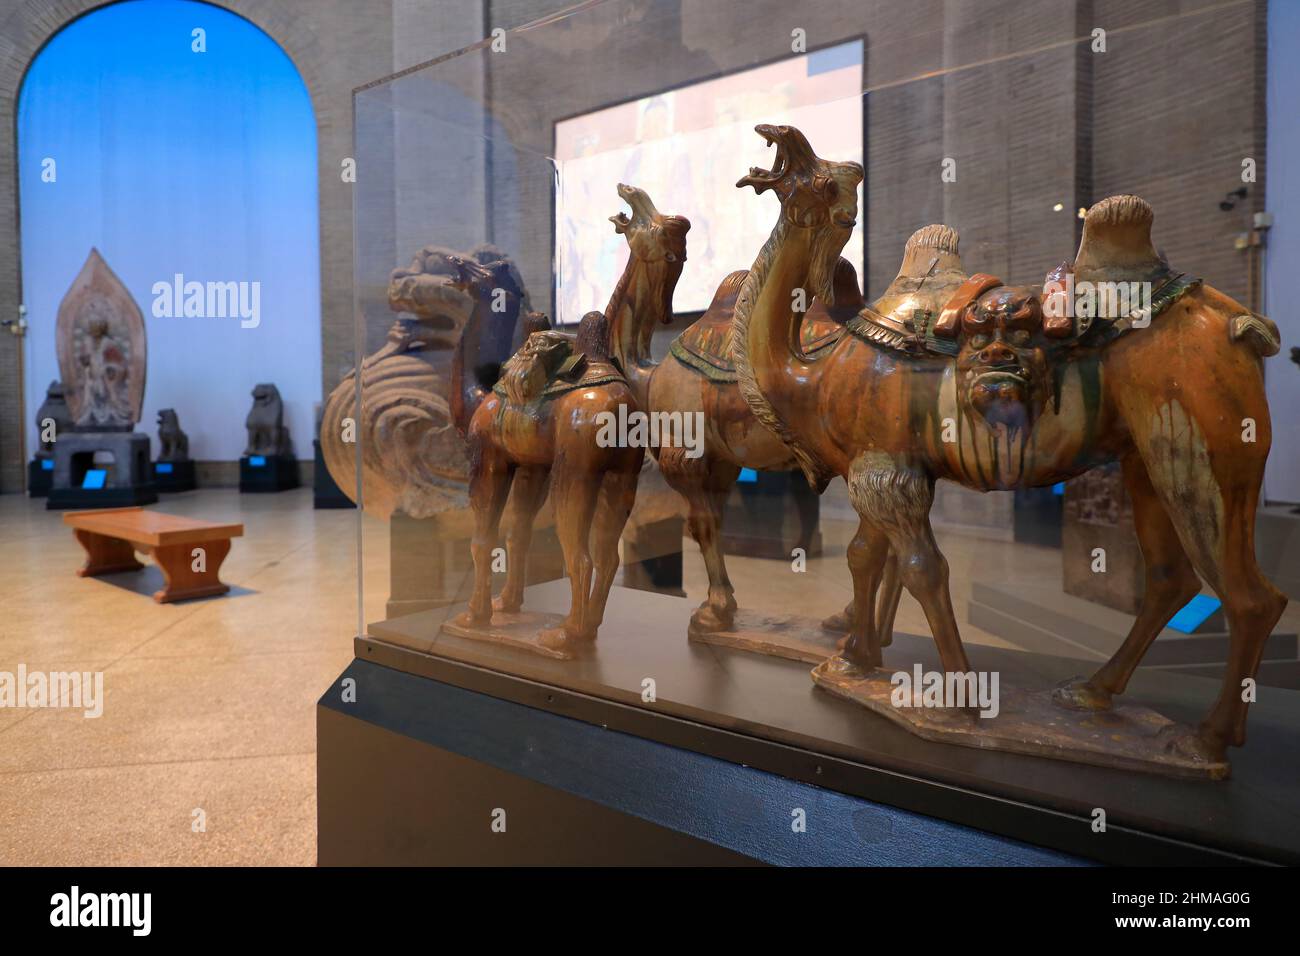 Poterie émaillée de chameaux de la dynastie Tang de Chine aka Tang Sancai chameaux exposés dans la rotonde chinoise de l'Asie Galeries dans Penn Museum.University of Pennsylvania.Philadelphia.Pennsylvania.USA Banque D'Images